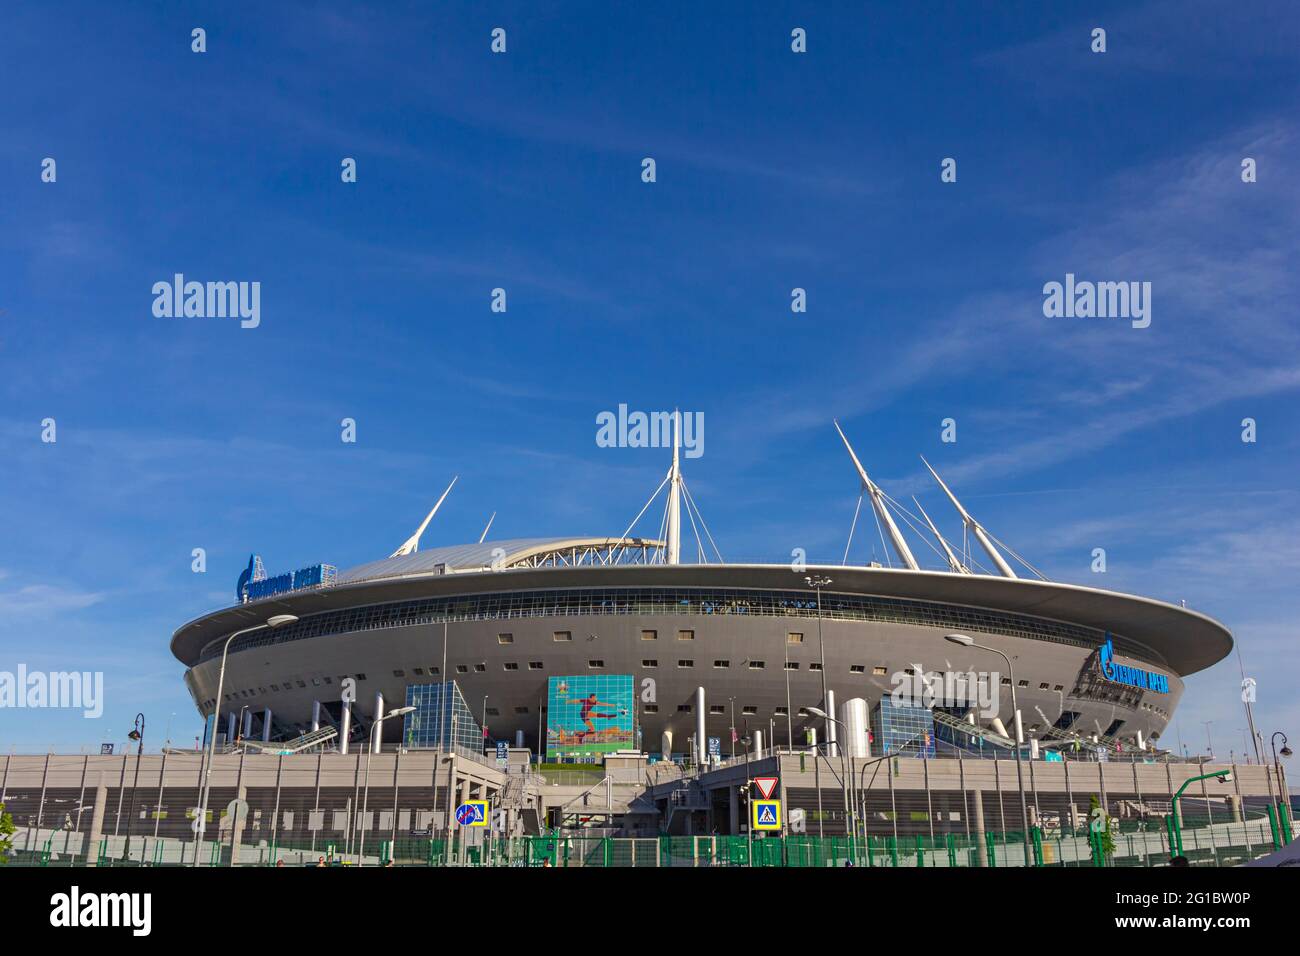 Russia, San Pietroburgo, 07 giugno 2021:la vista della bandiera ufficiale del campionato europeo di calcio UEFA e lo stadio Gazprom Arena, Euro 2020, 2021 Foto Stock